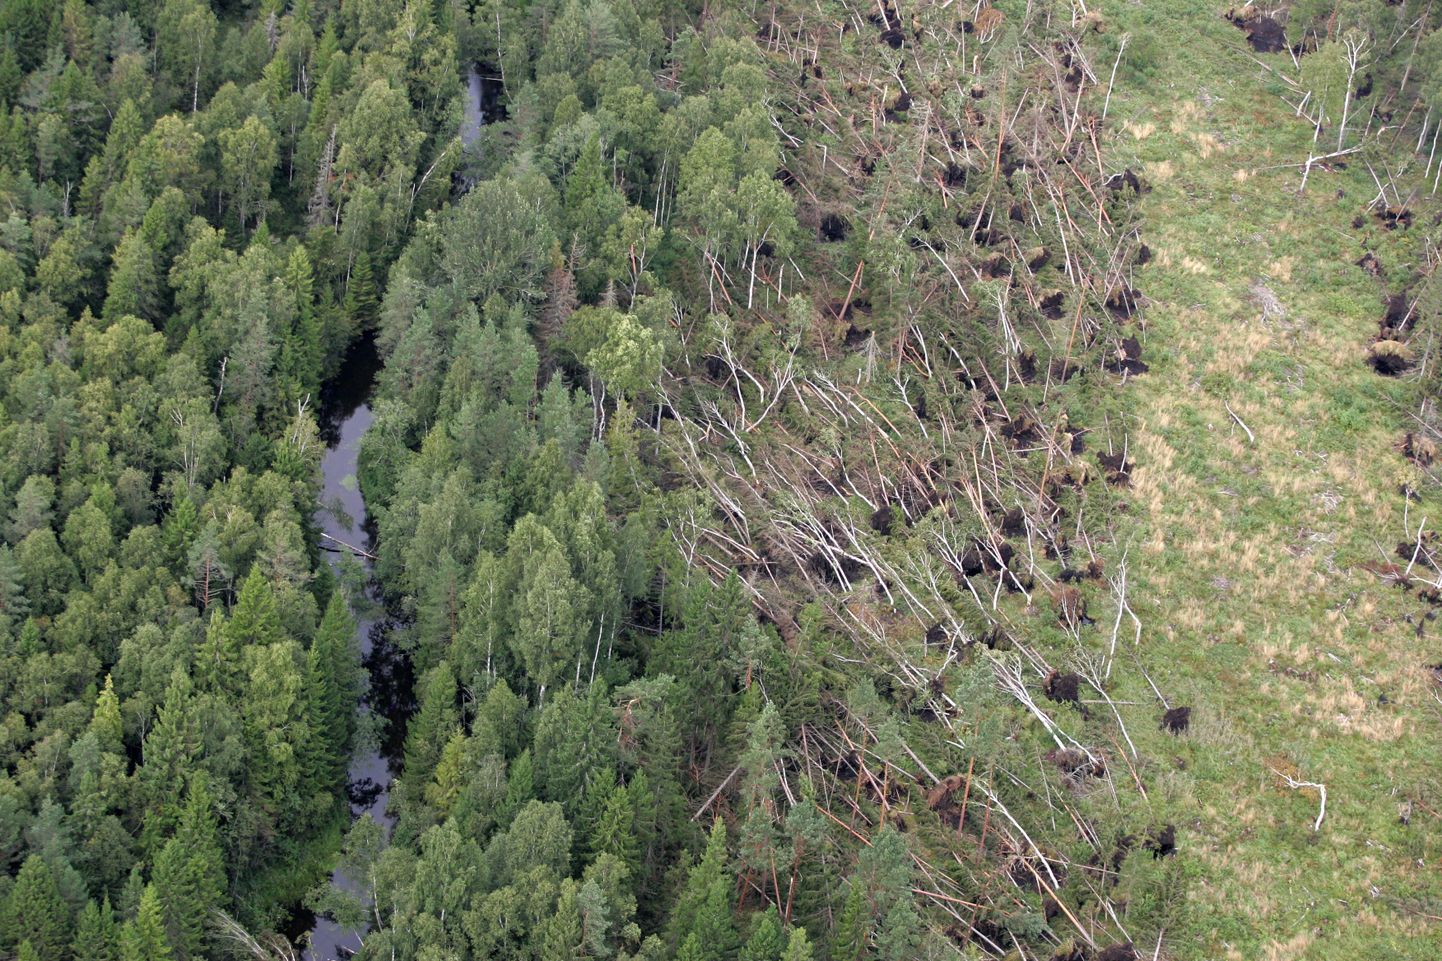 Suures augustitormis sai kõige rohkem kannatada Lääne-Virumaa, mille arvele läheb umbes pool terve Eesti tormikahjudest. Pildil maru murtud mets Väike-Maarja lähedal.